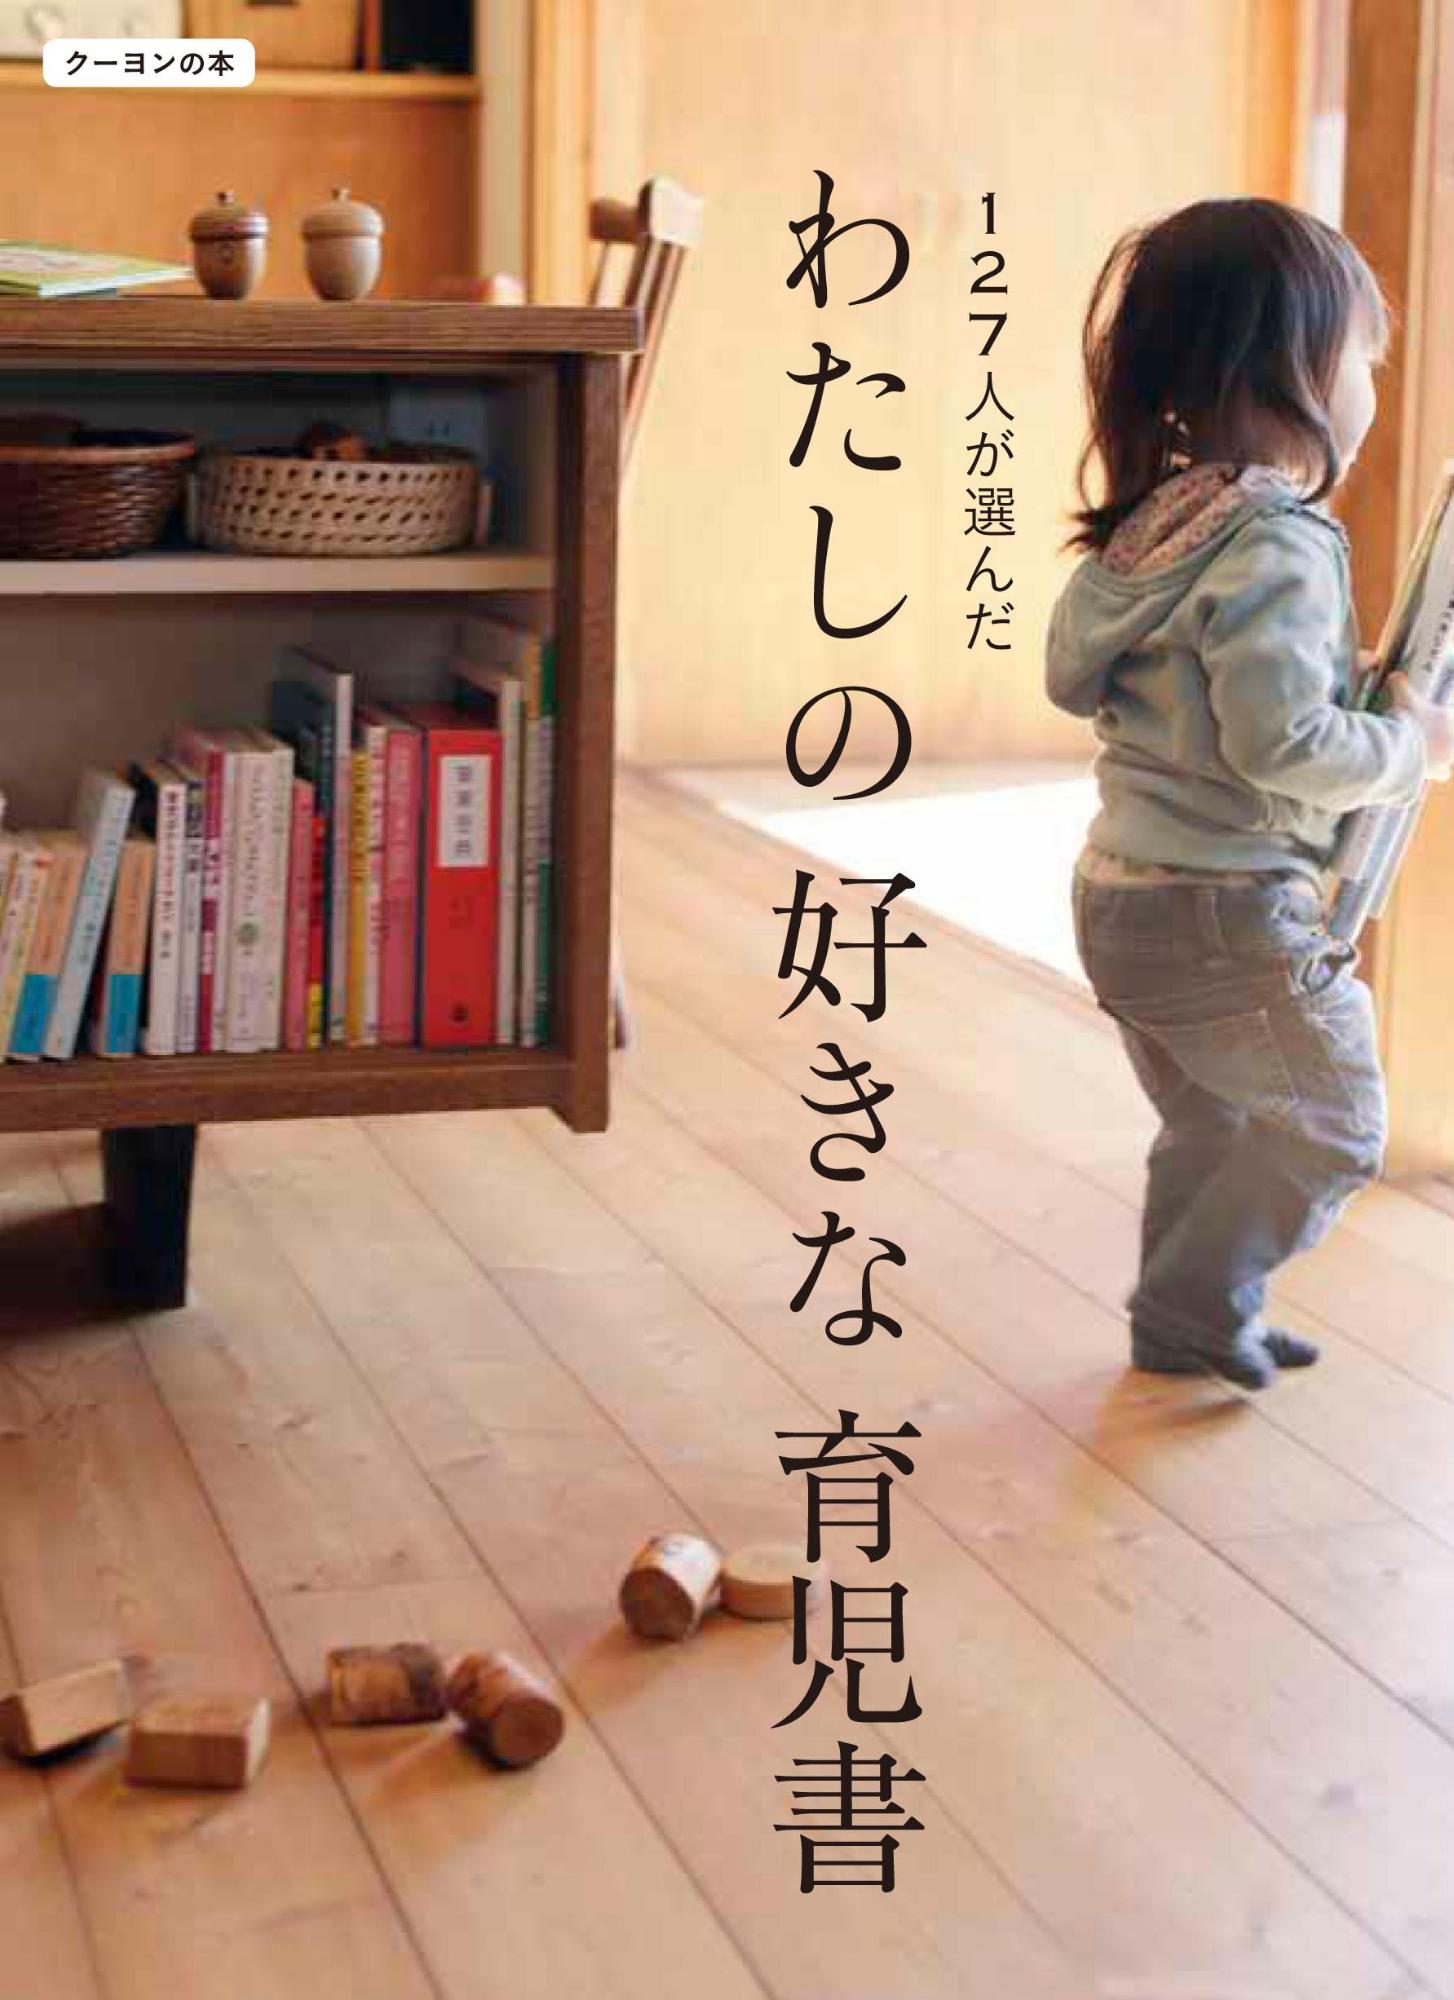 木のおもちゃと本棚のある部屋に子供が立っている「127人が選んだわたしの好きな育児書」の表紙